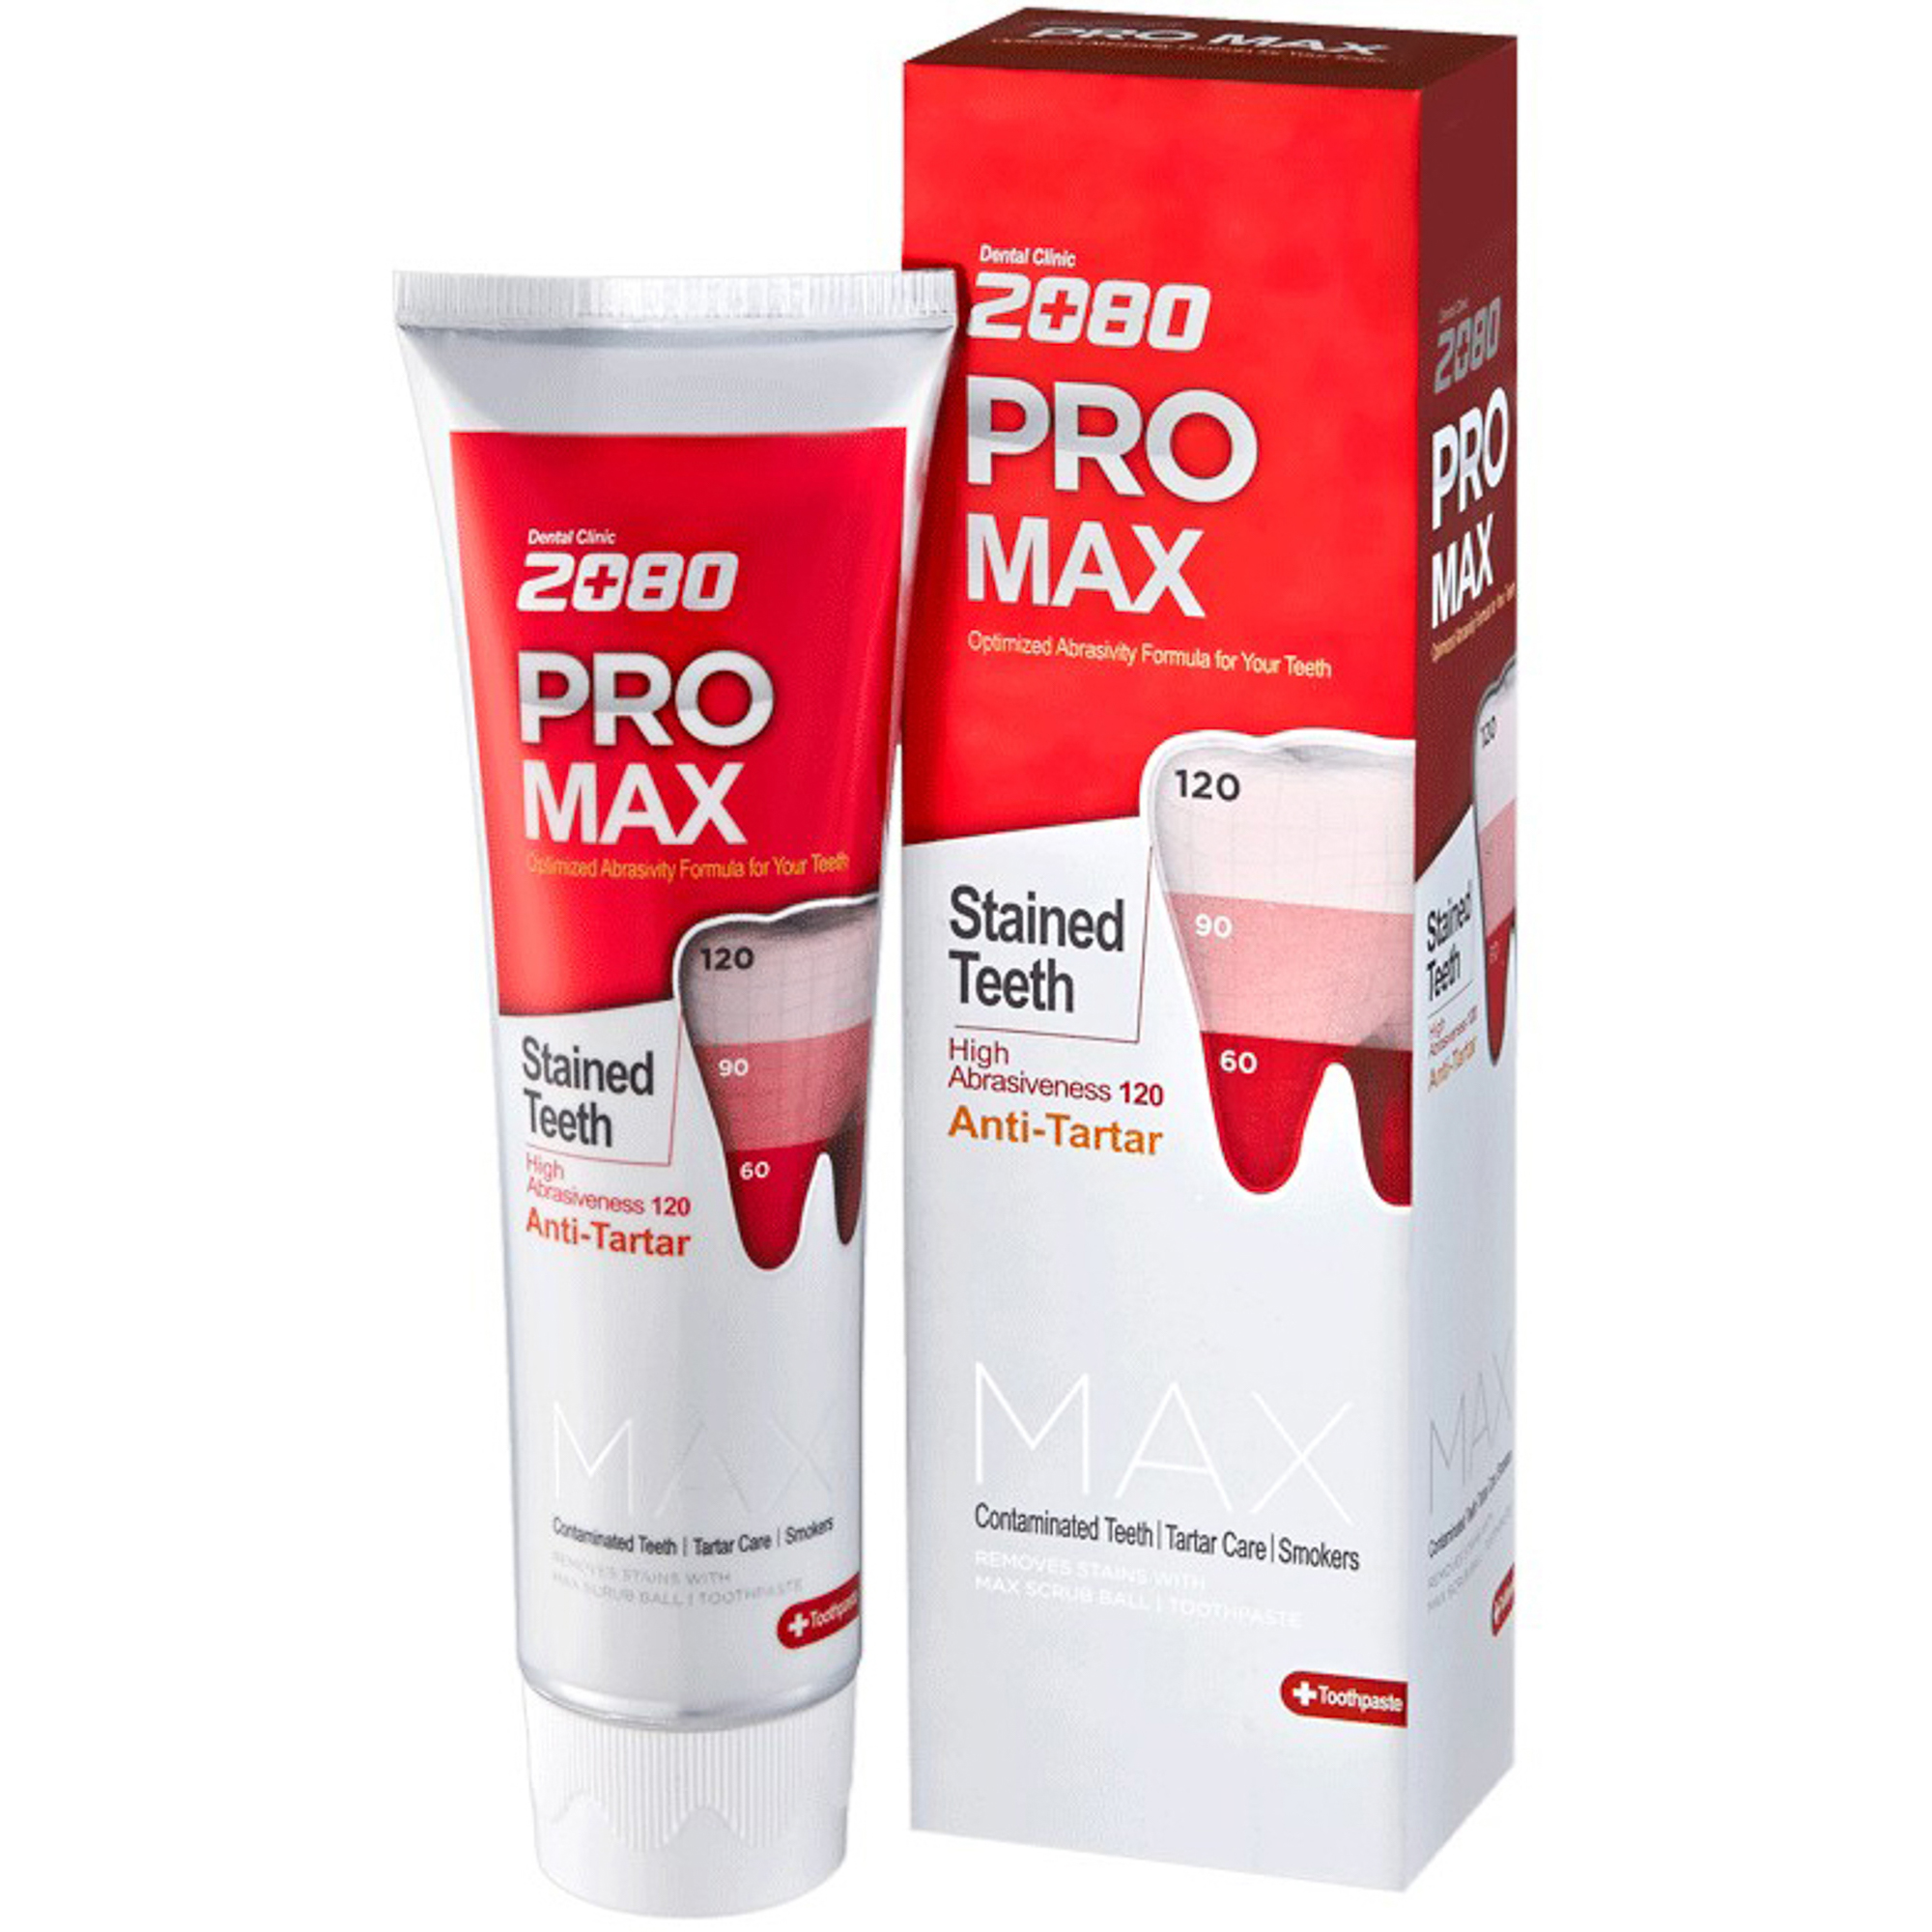 Зубная паста Kerasys Dental Clinic 2080 PRO MAX Максимальная защита 125 г зубная нить colgate optic white профилактика зубного налета 25 м